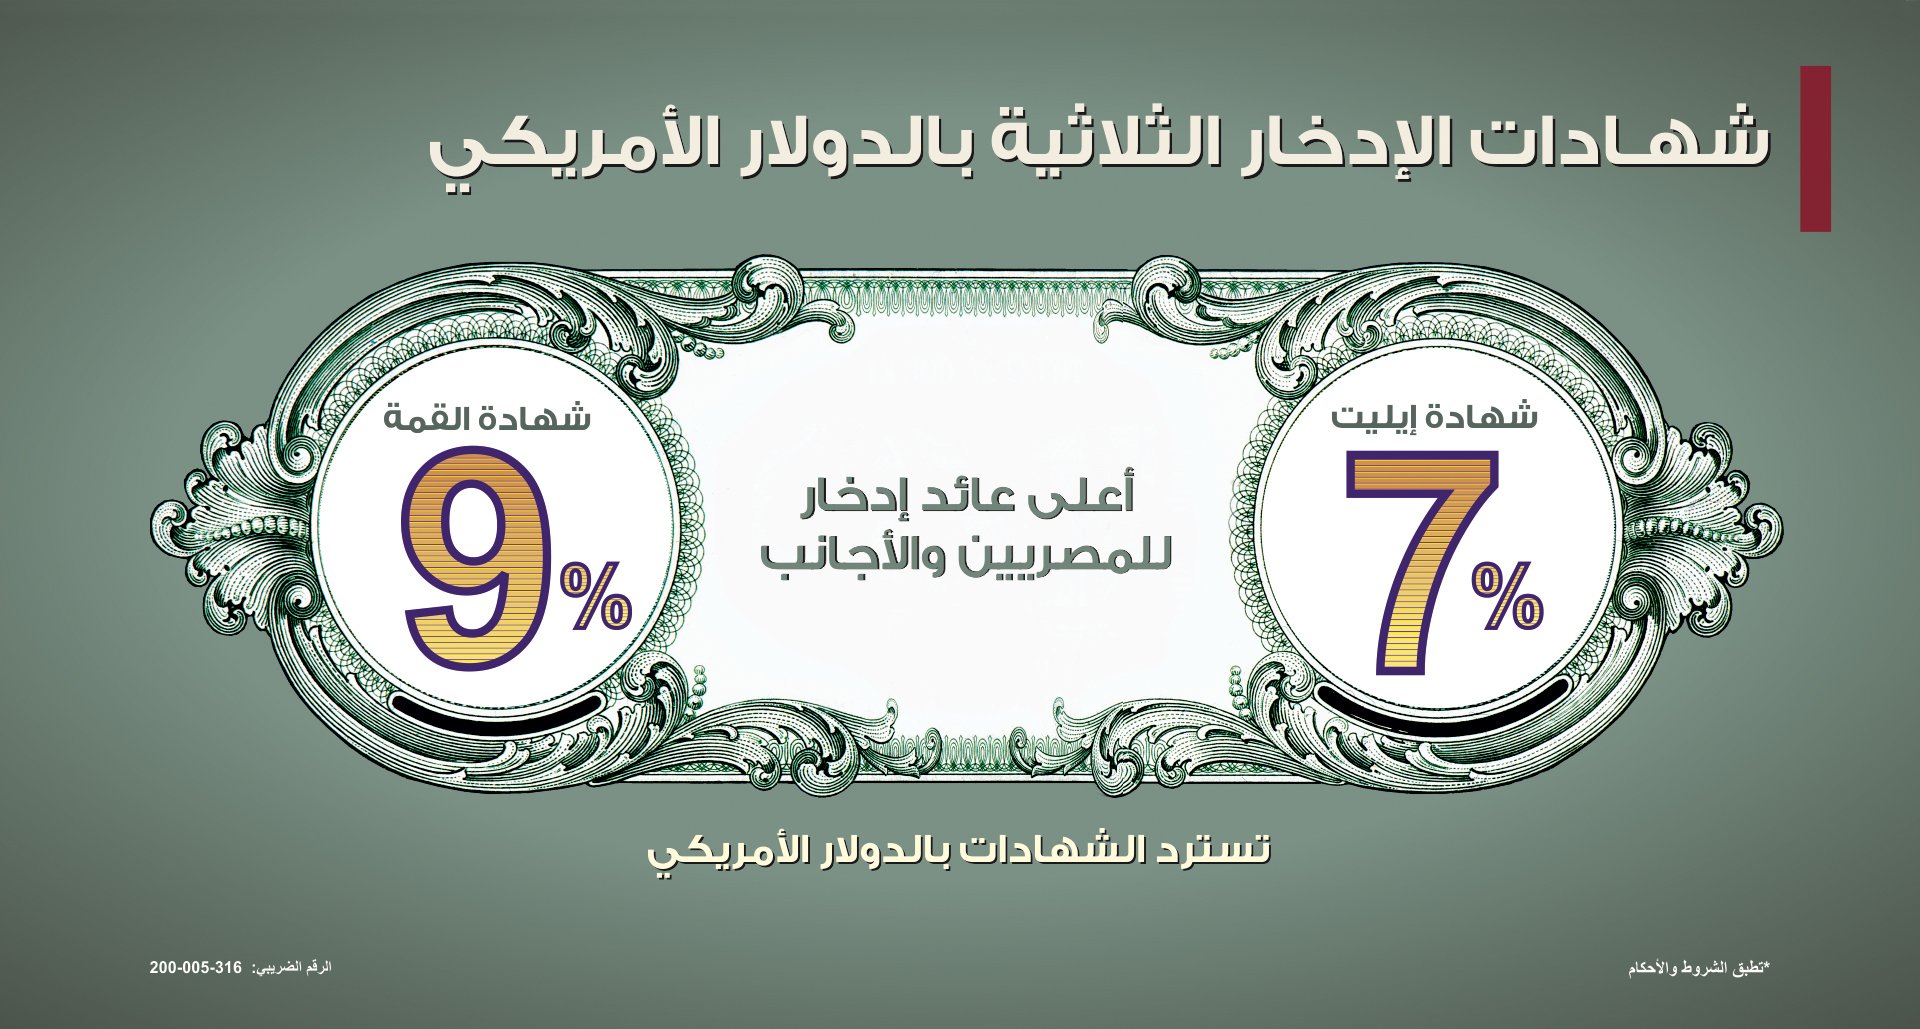 شهادة دولارية من بنك مصر